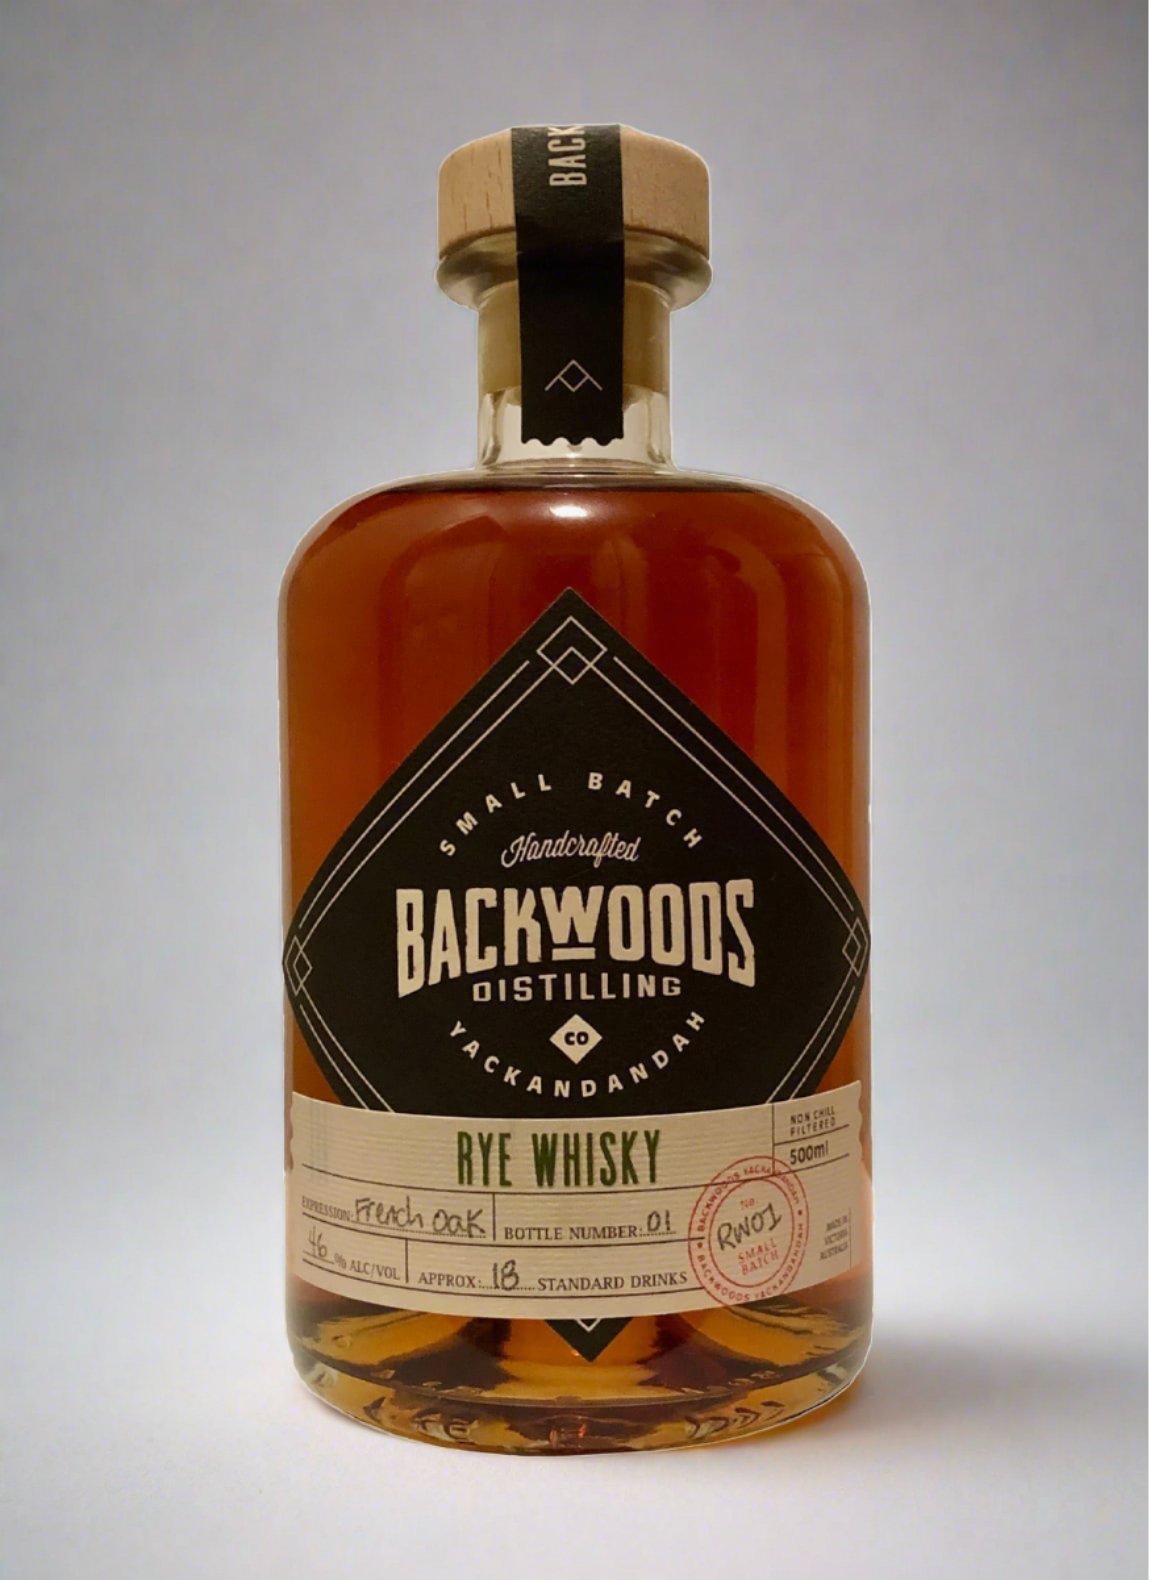 Backwoods Rye Whisky 46% 500ml Batch 2 - Whisky > Rye Whiskey, Whisky - Liquor Wine Cave